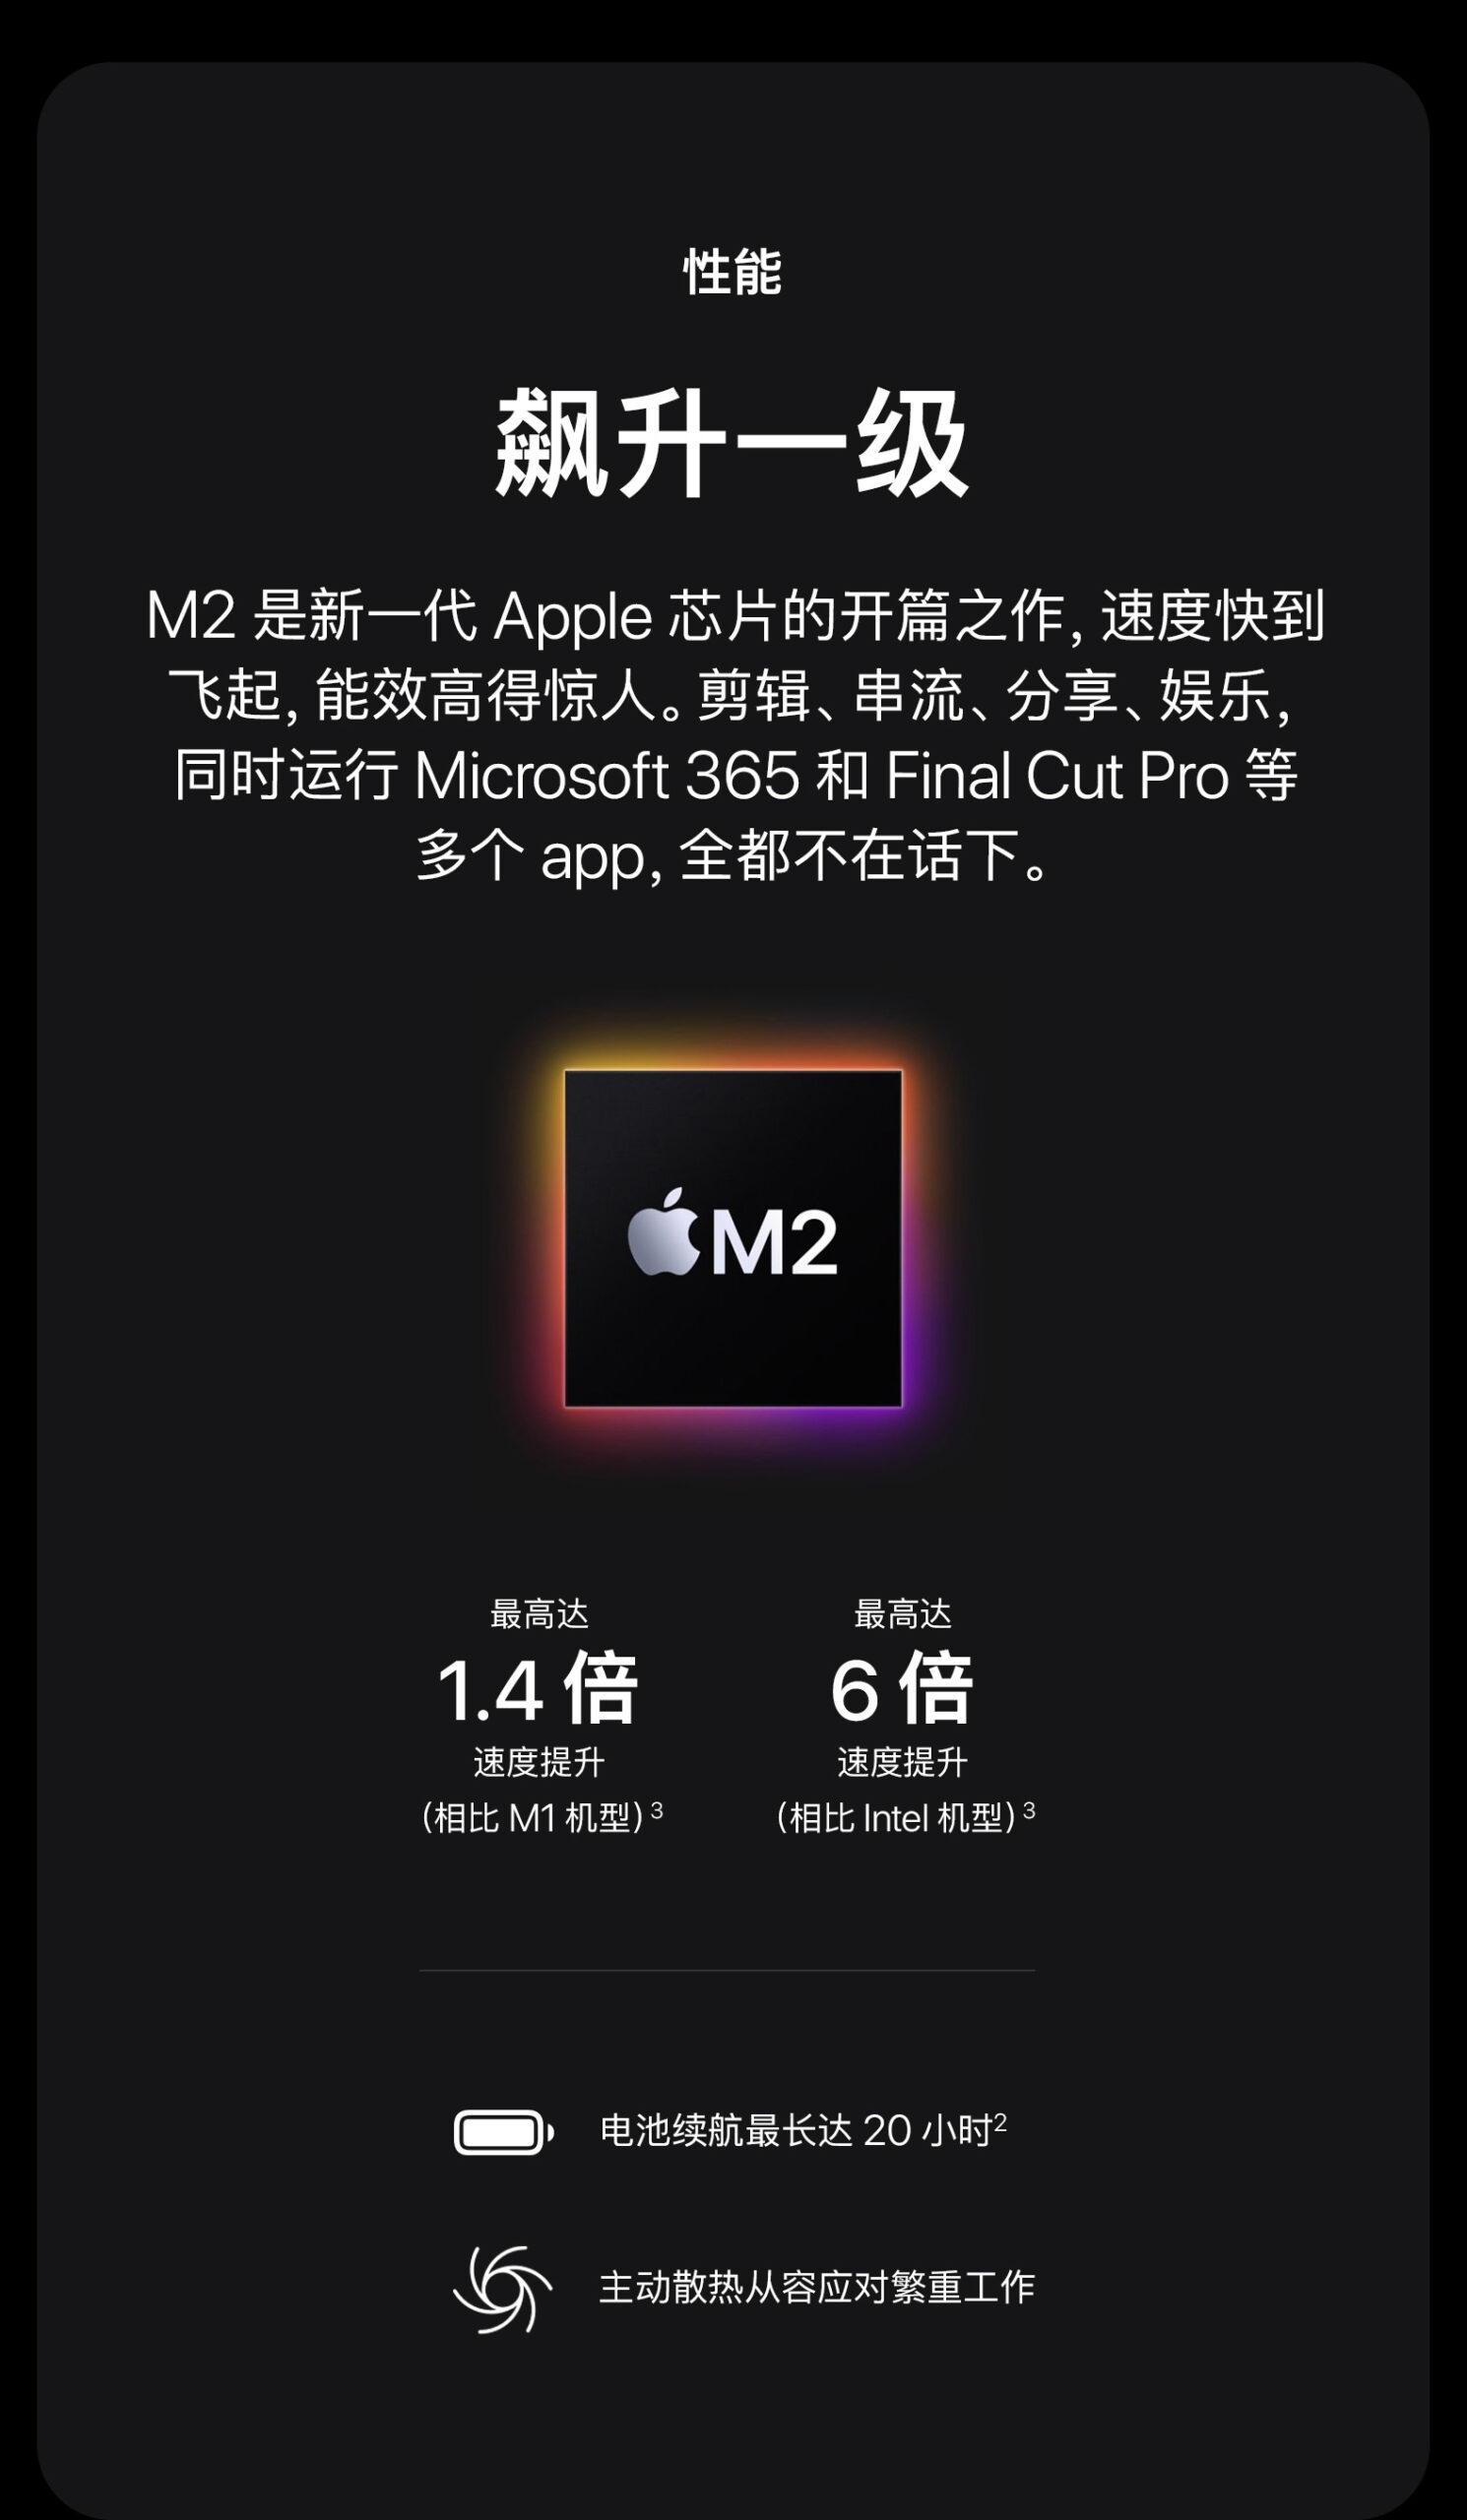 Apple/苹果 13 英寸 MacBook Pro Apple M2 芯片